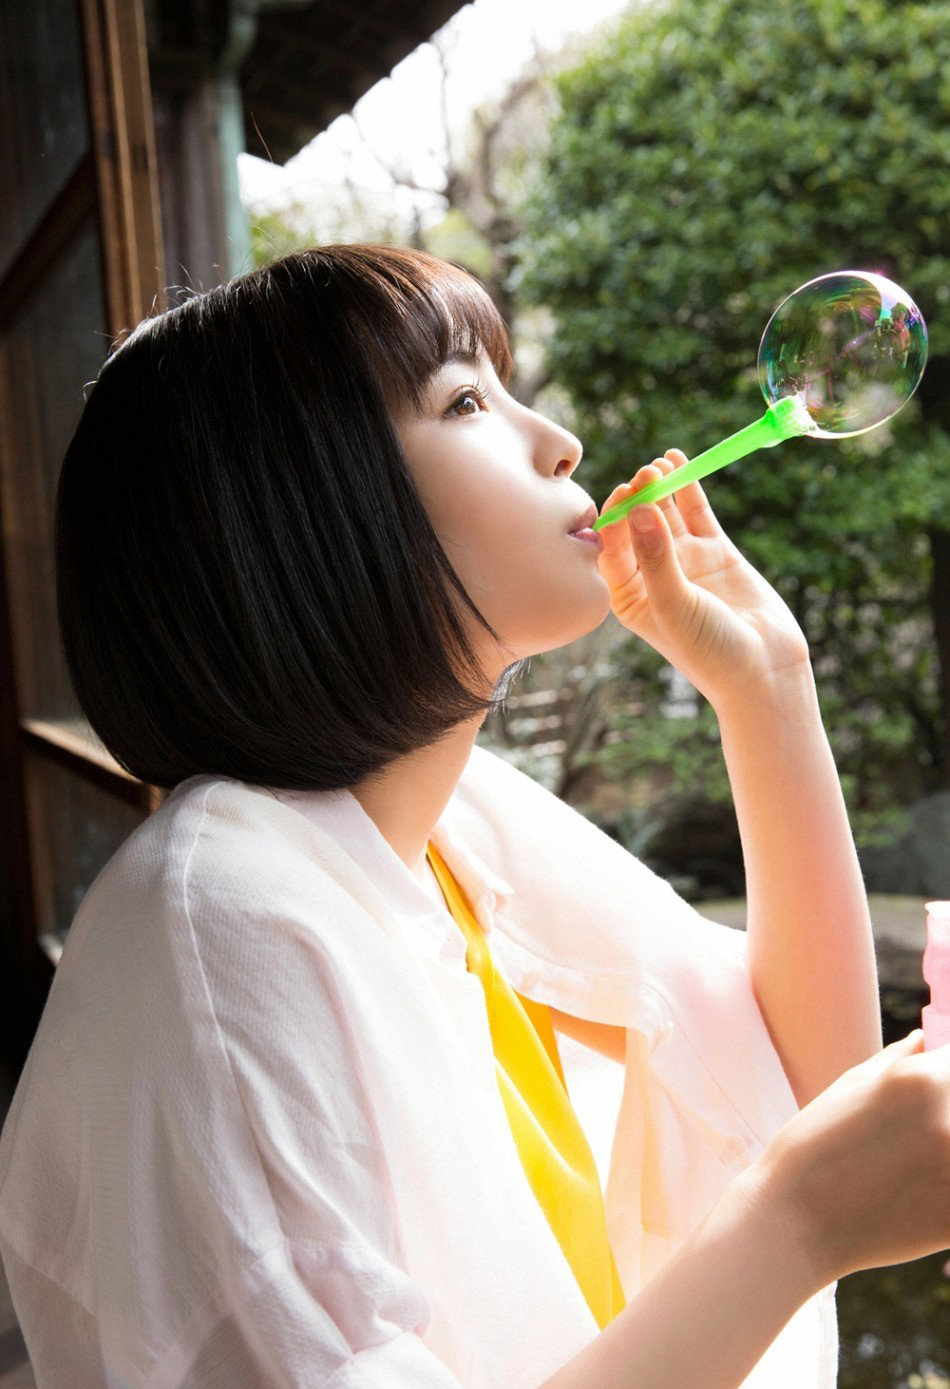 日本17岁氧气女孩拍摄夏日写真:清新自然风